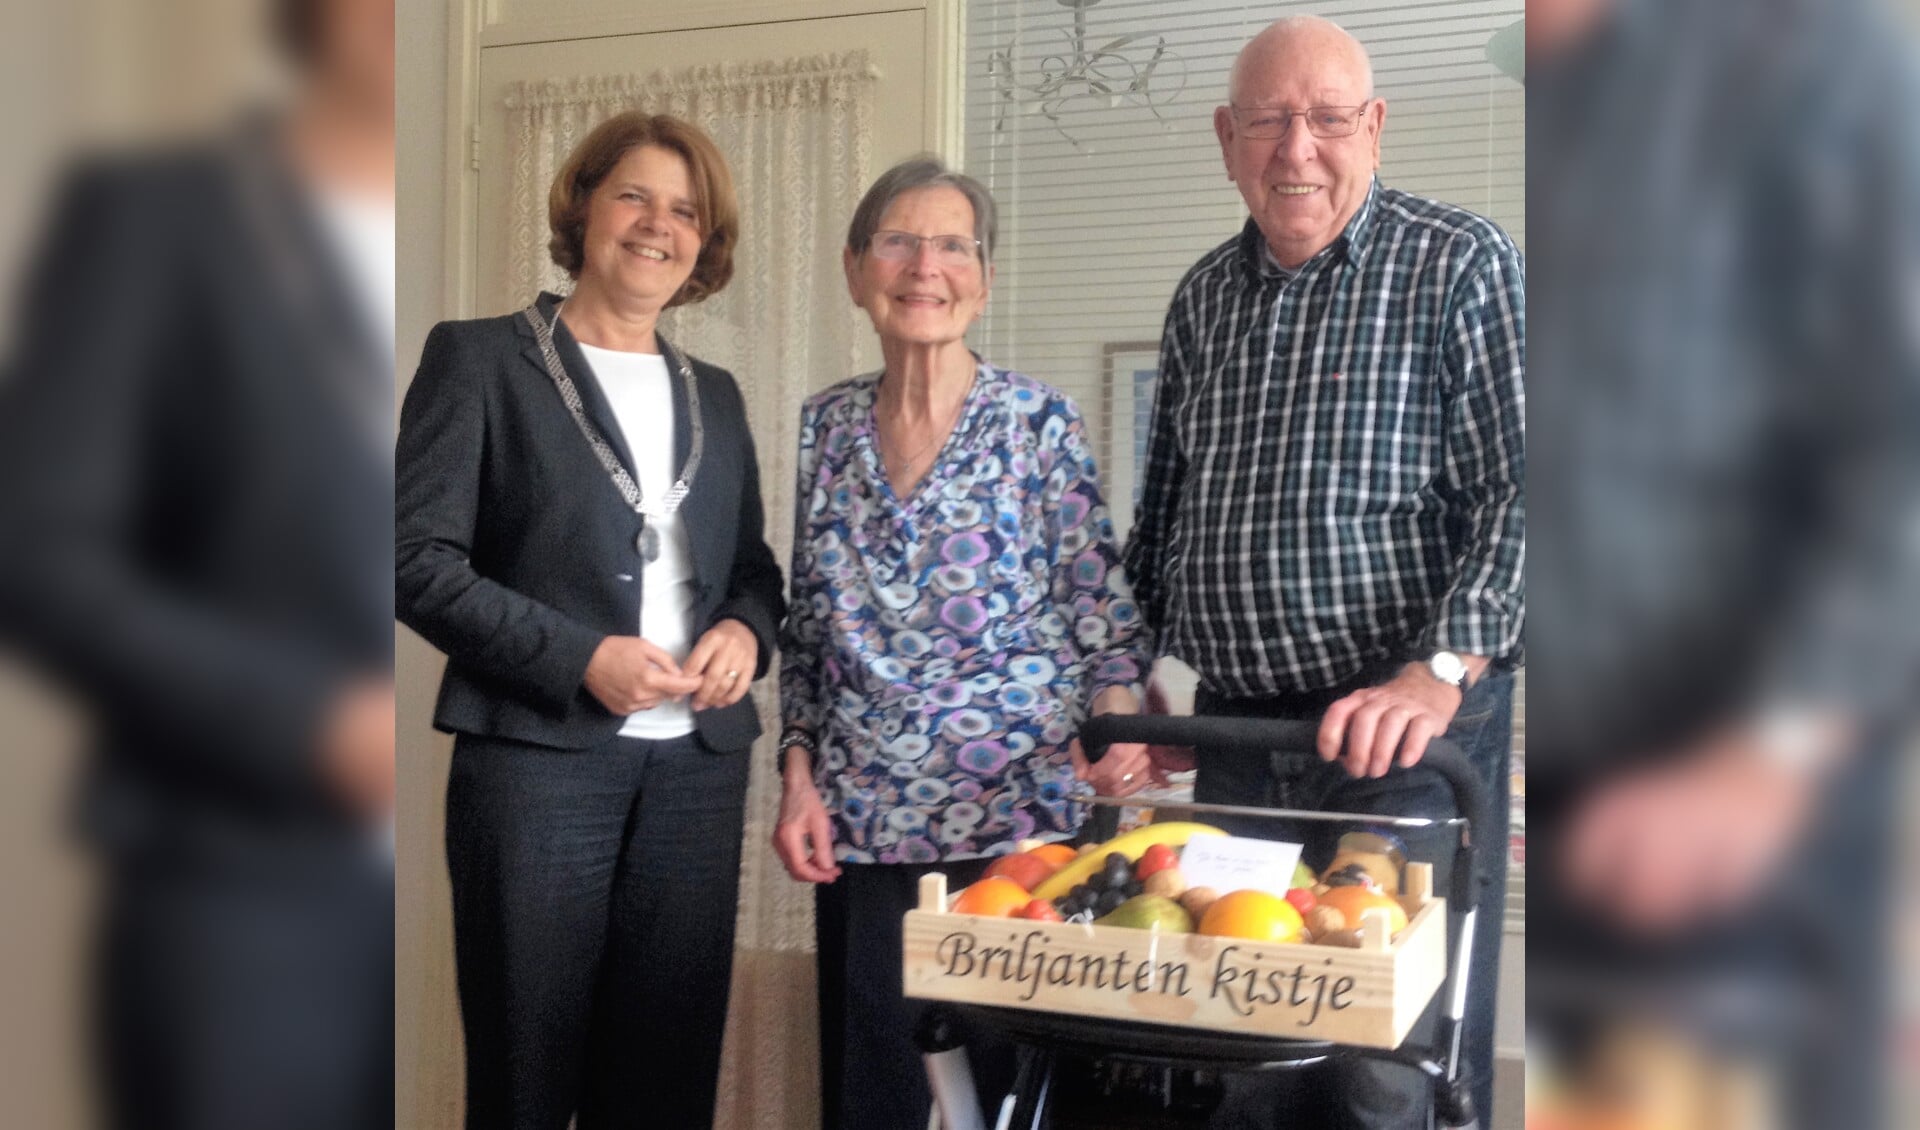 Op 7 mei waren de heer en mevrouw Van Galen-Hogervorst 65 jaar getrouwd. Burgemeester Marja van Bijsterveldt kwam op bezoek om het mee te vieren.